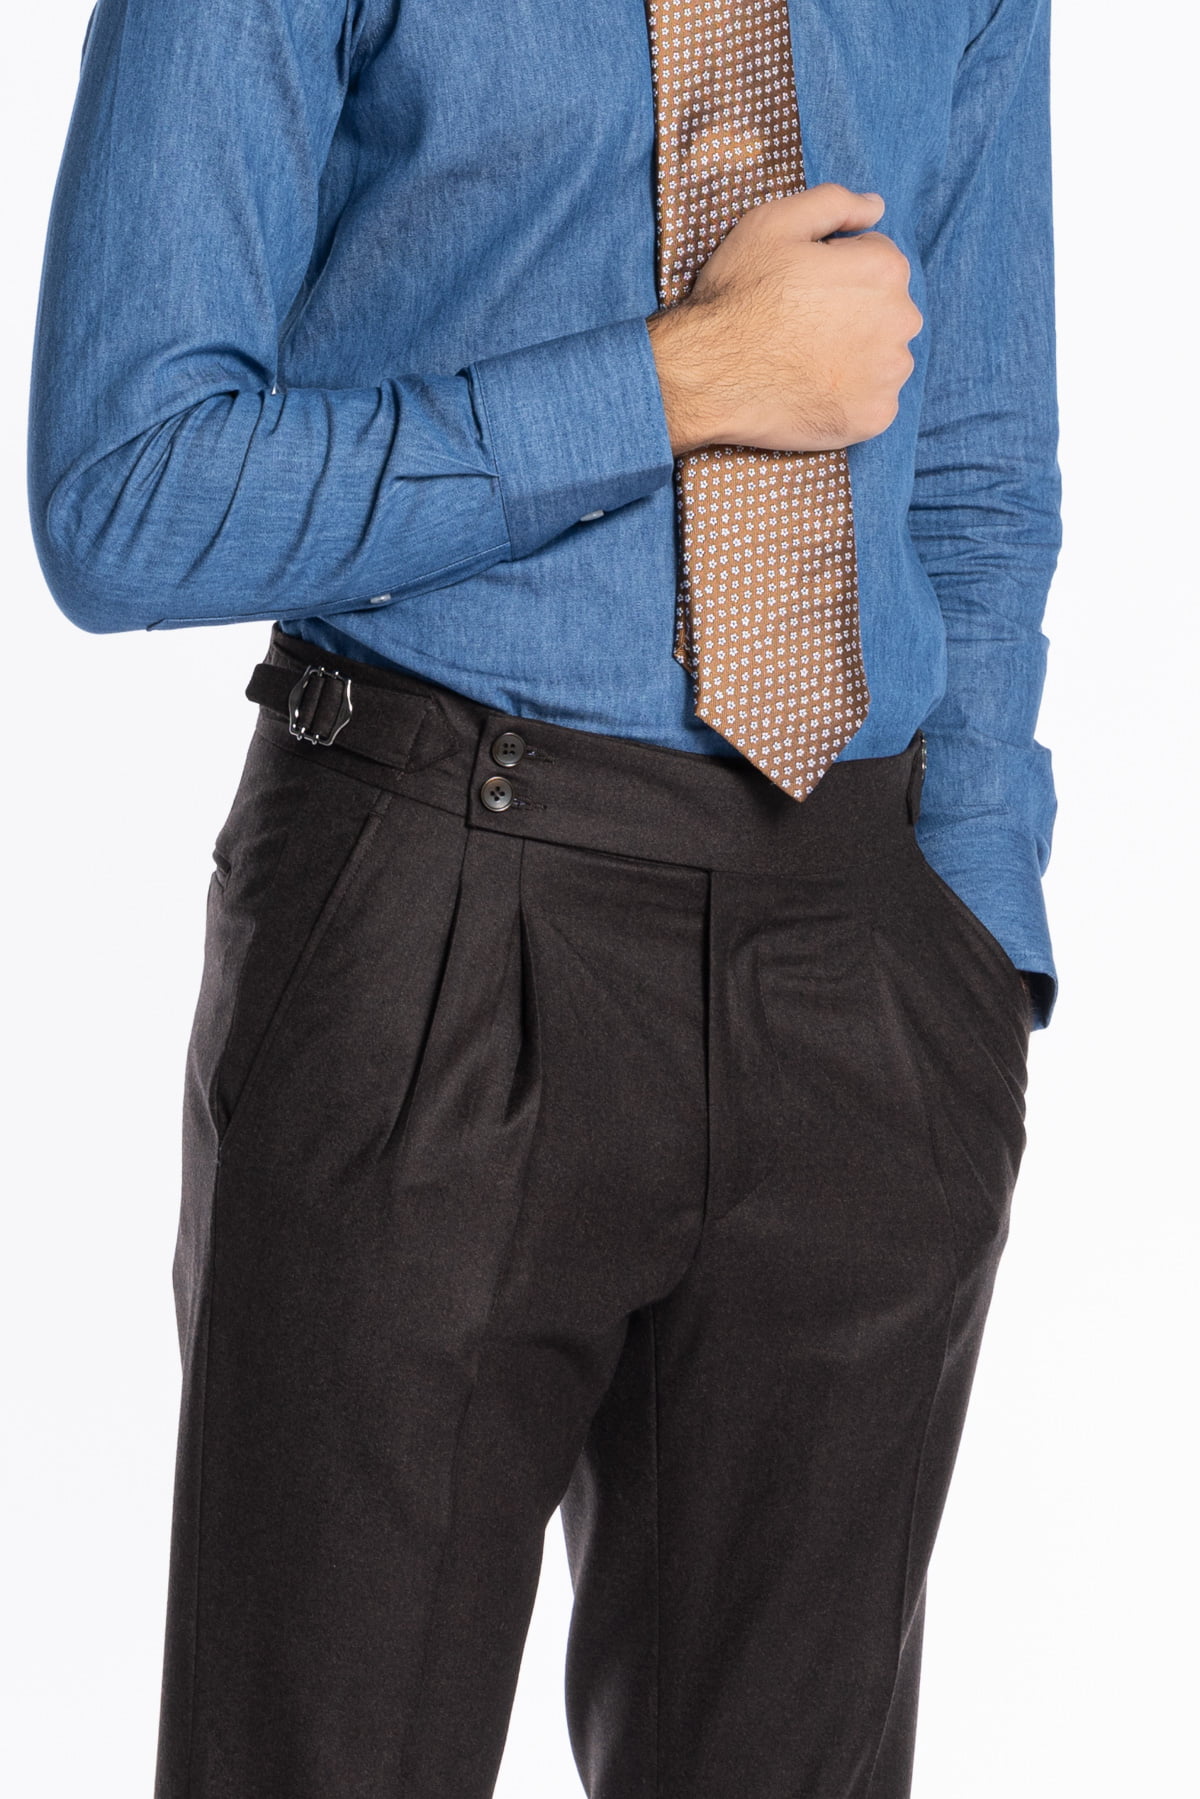 Pantalone uomo marrone vita alta tasca america in lana flanella con pinces e fibbie laterali Vitale Barberis Canonico